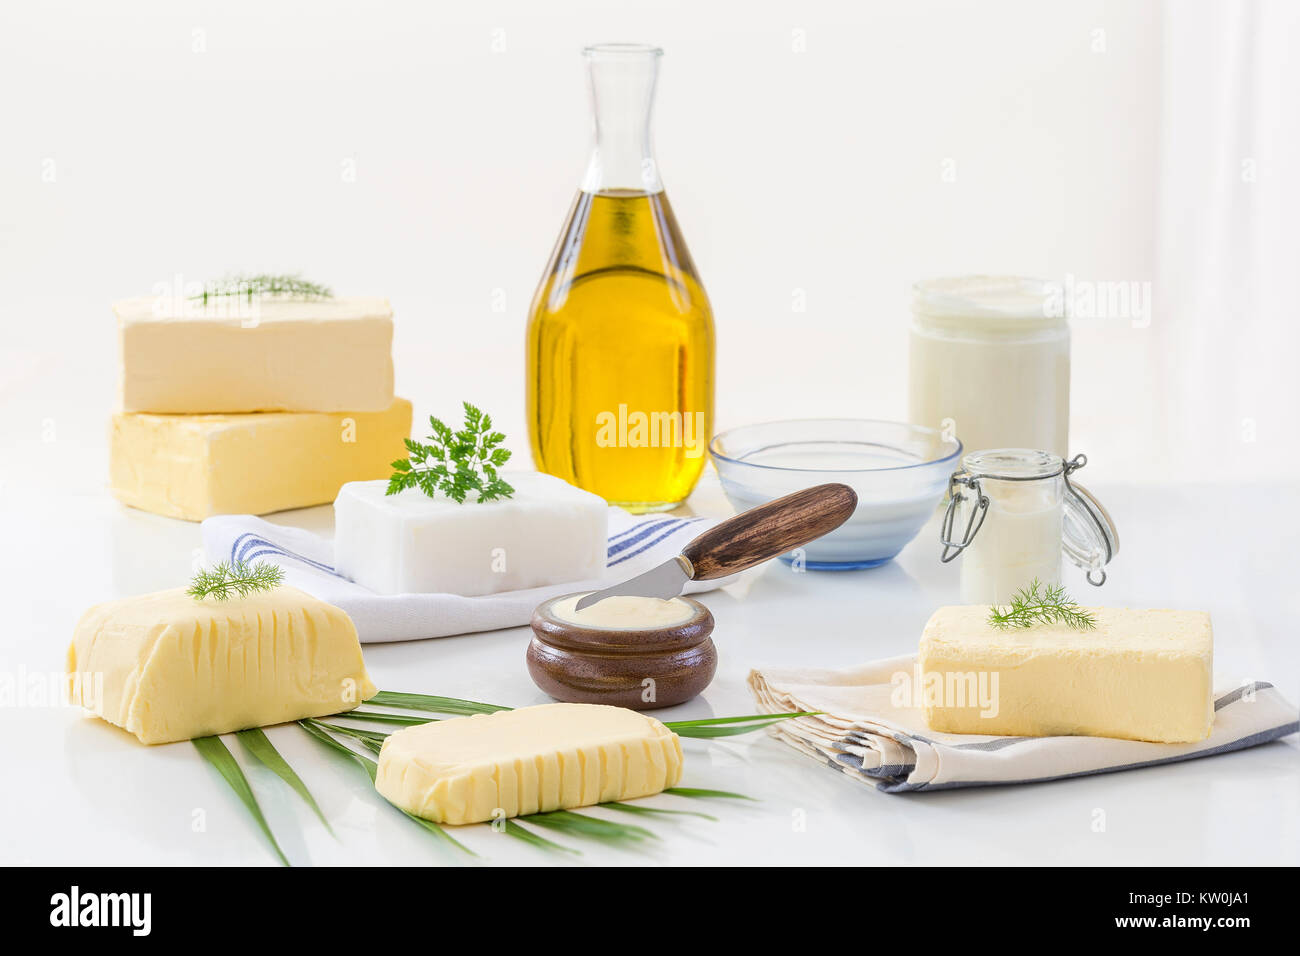 Grassi alimentari: set di prodotti lattiero-caseari e olio su sfondo bianco Foto Stock